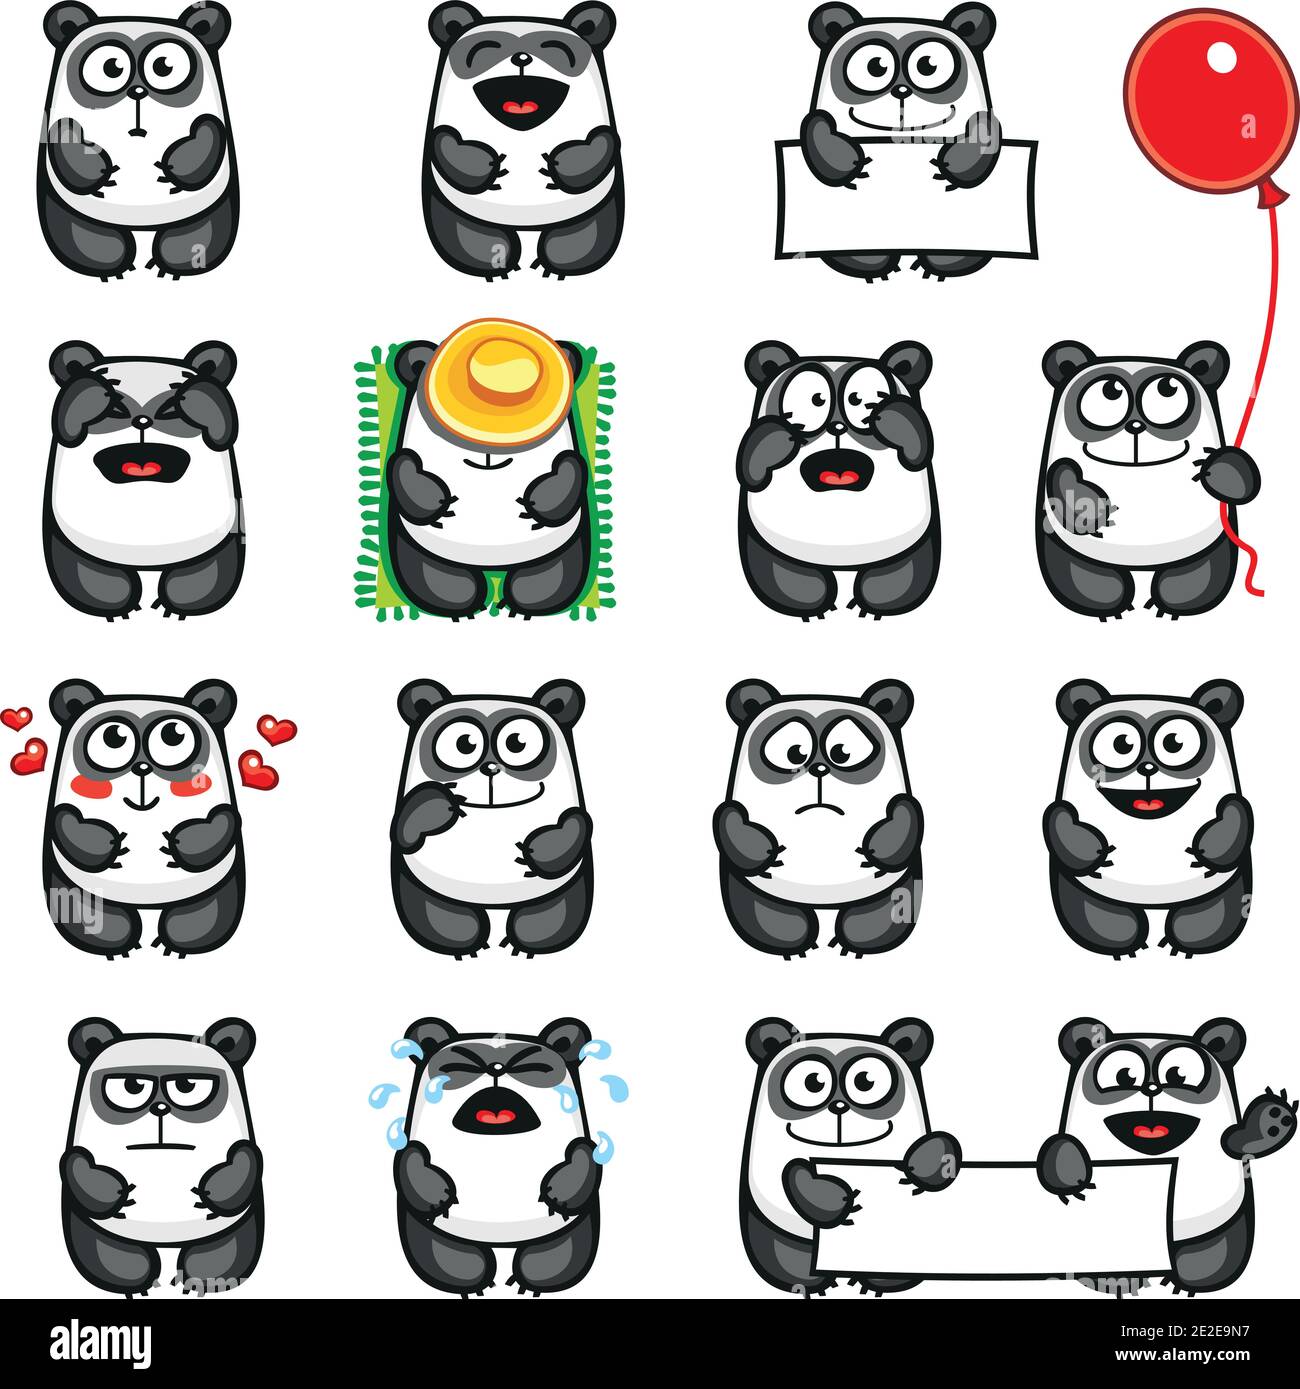 Smiley Pandas einzeln gruppiert für einfaches copy-n-paste. Stock Vektor